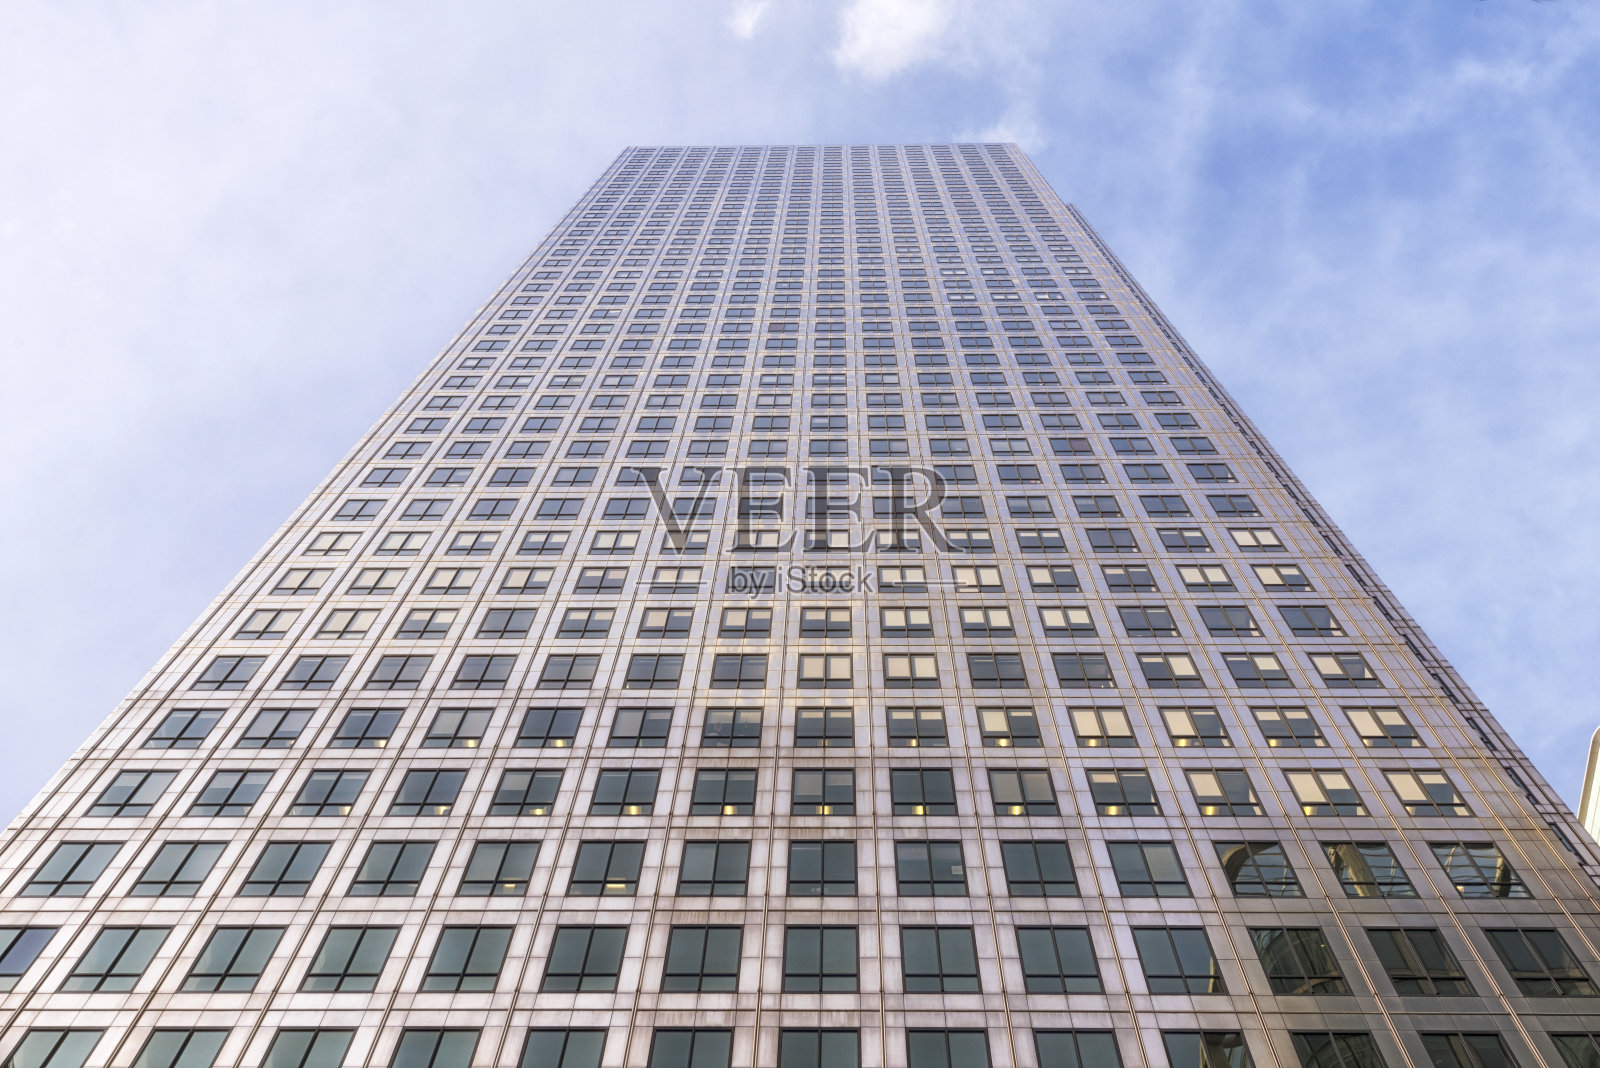 伦敦公司大楼照片摄影图片